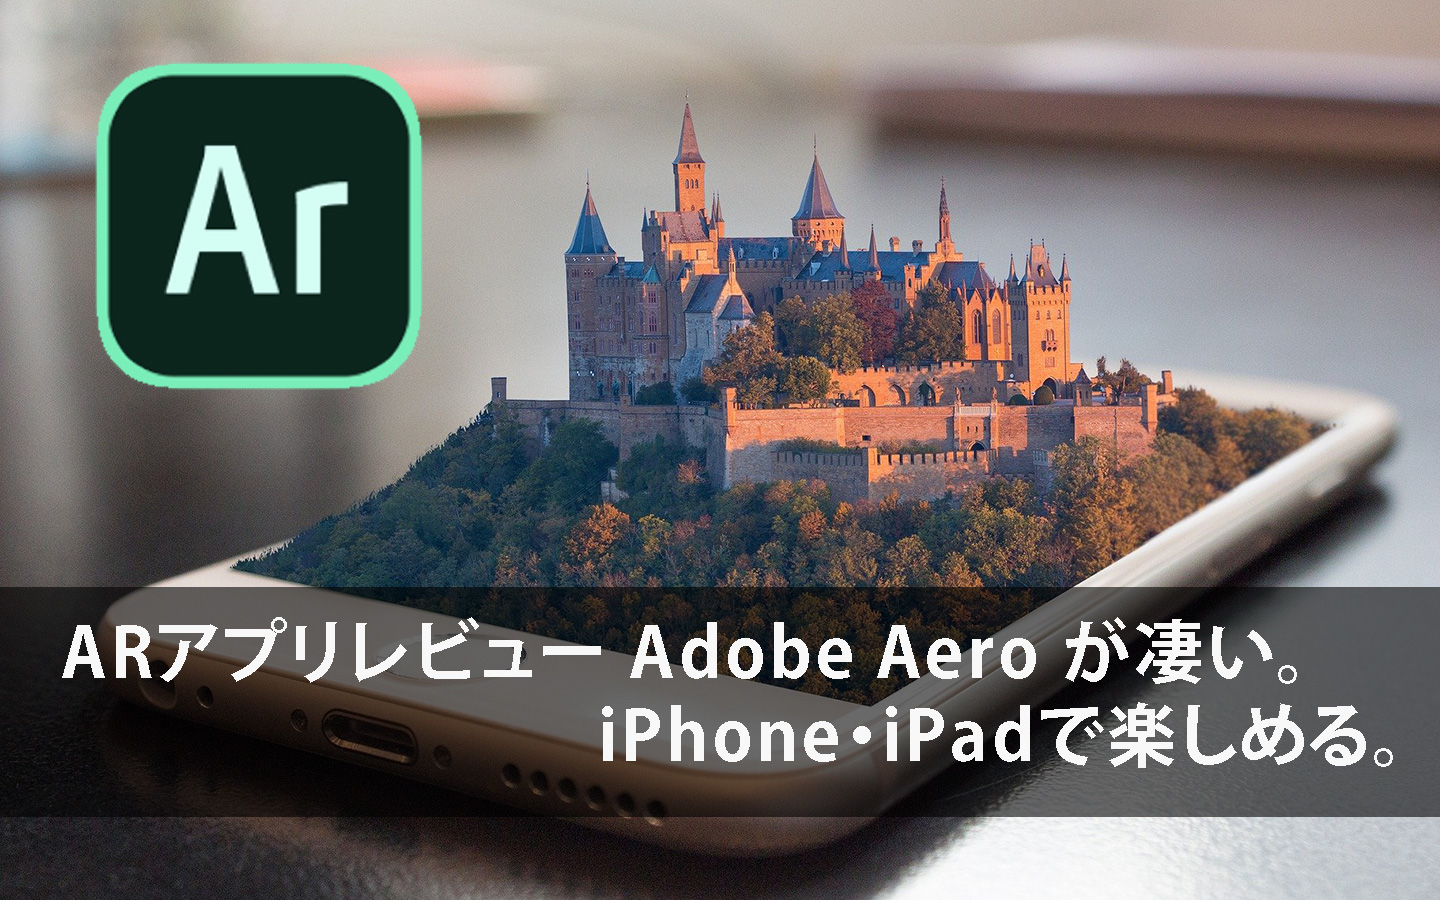 ARアプリレビュー Adobe Aero が凄い!iPhone・iPadで楽しめる。